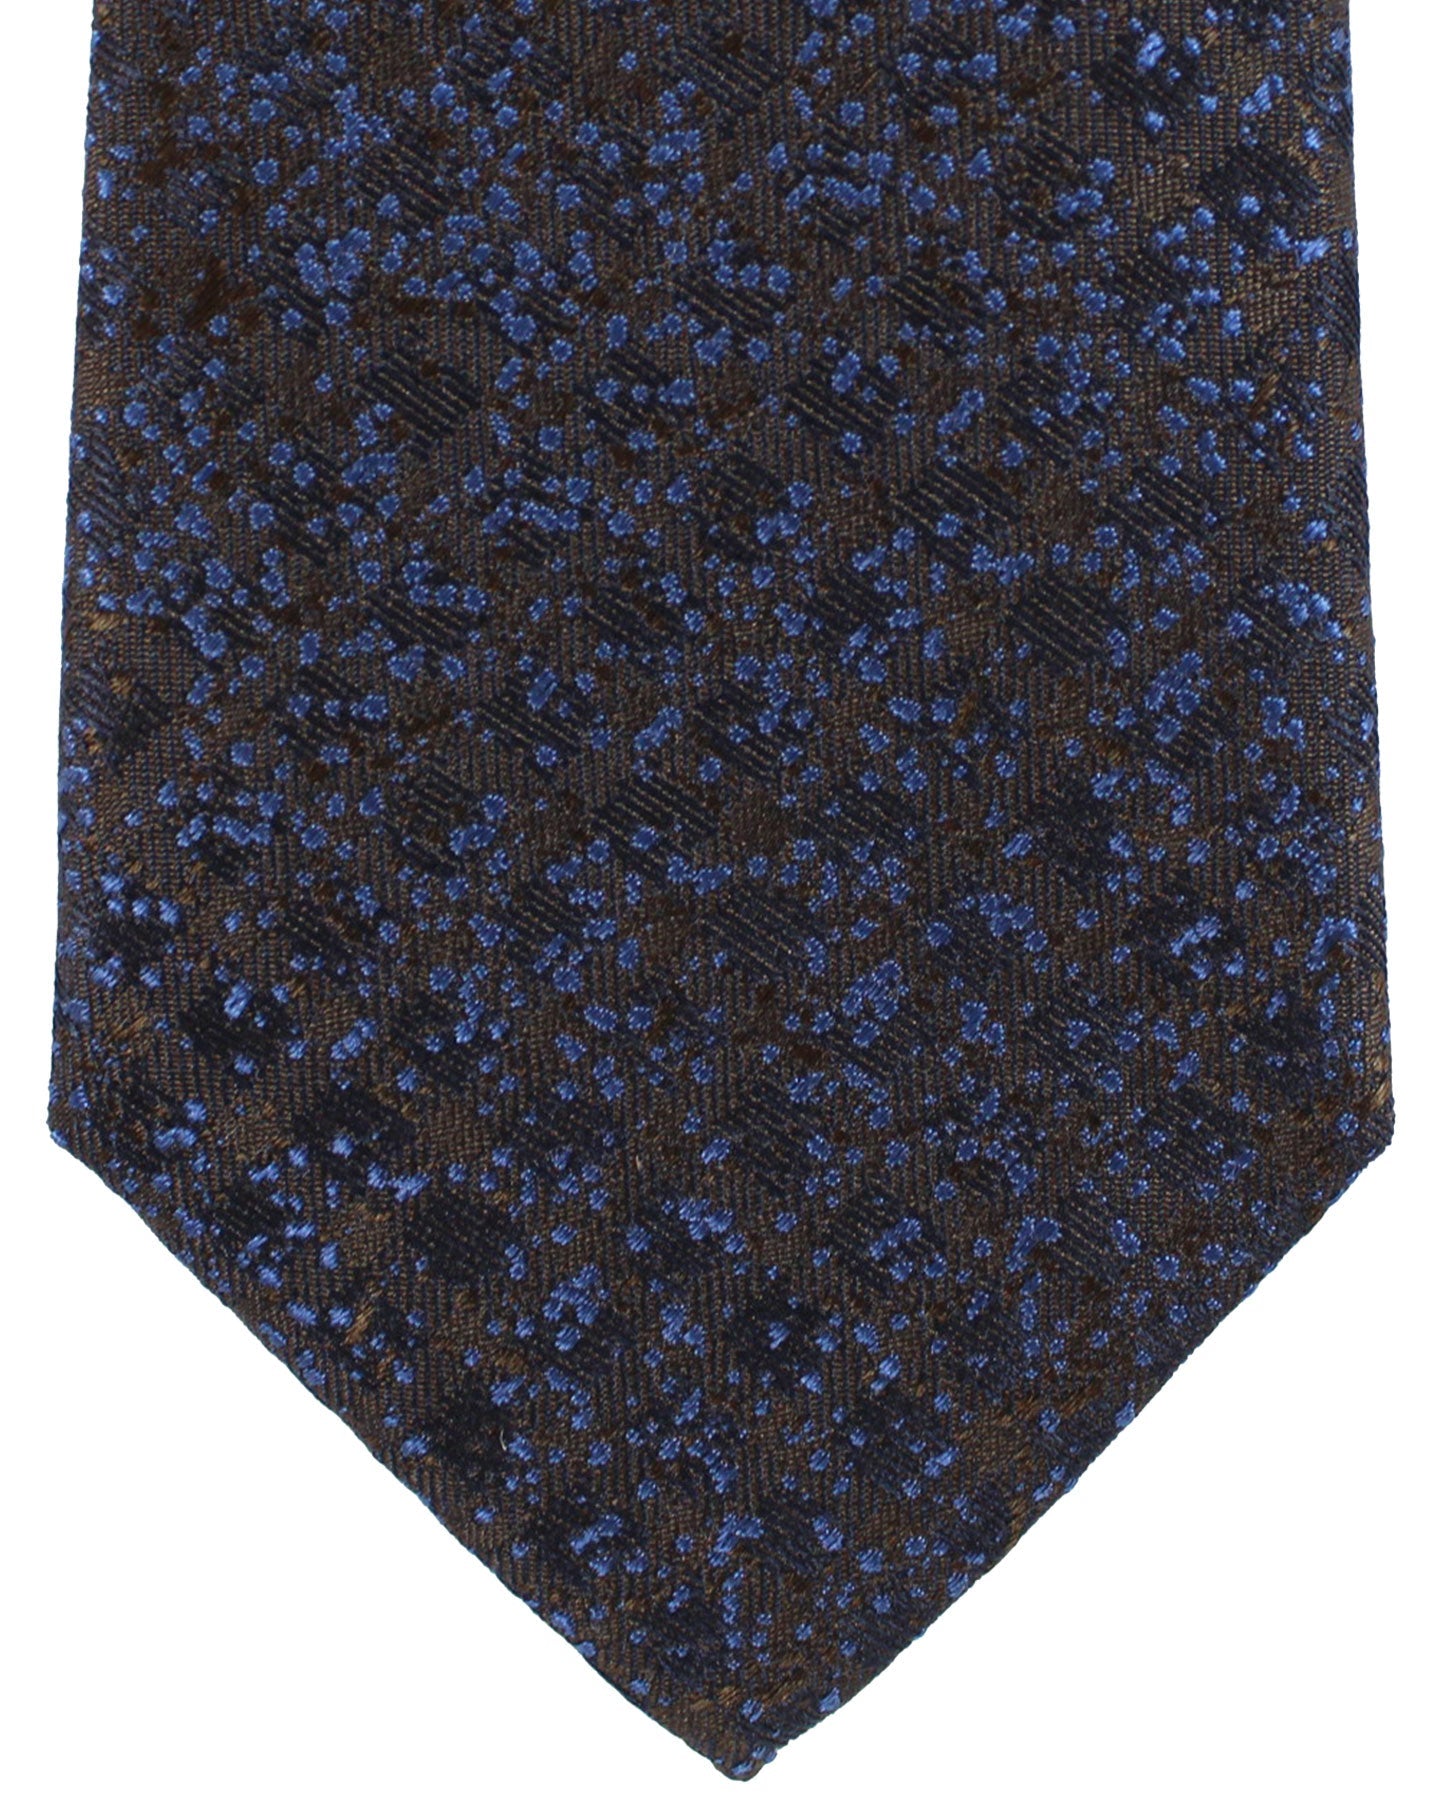 Canali Silk Tie Brown Dark Blue Design Pattern